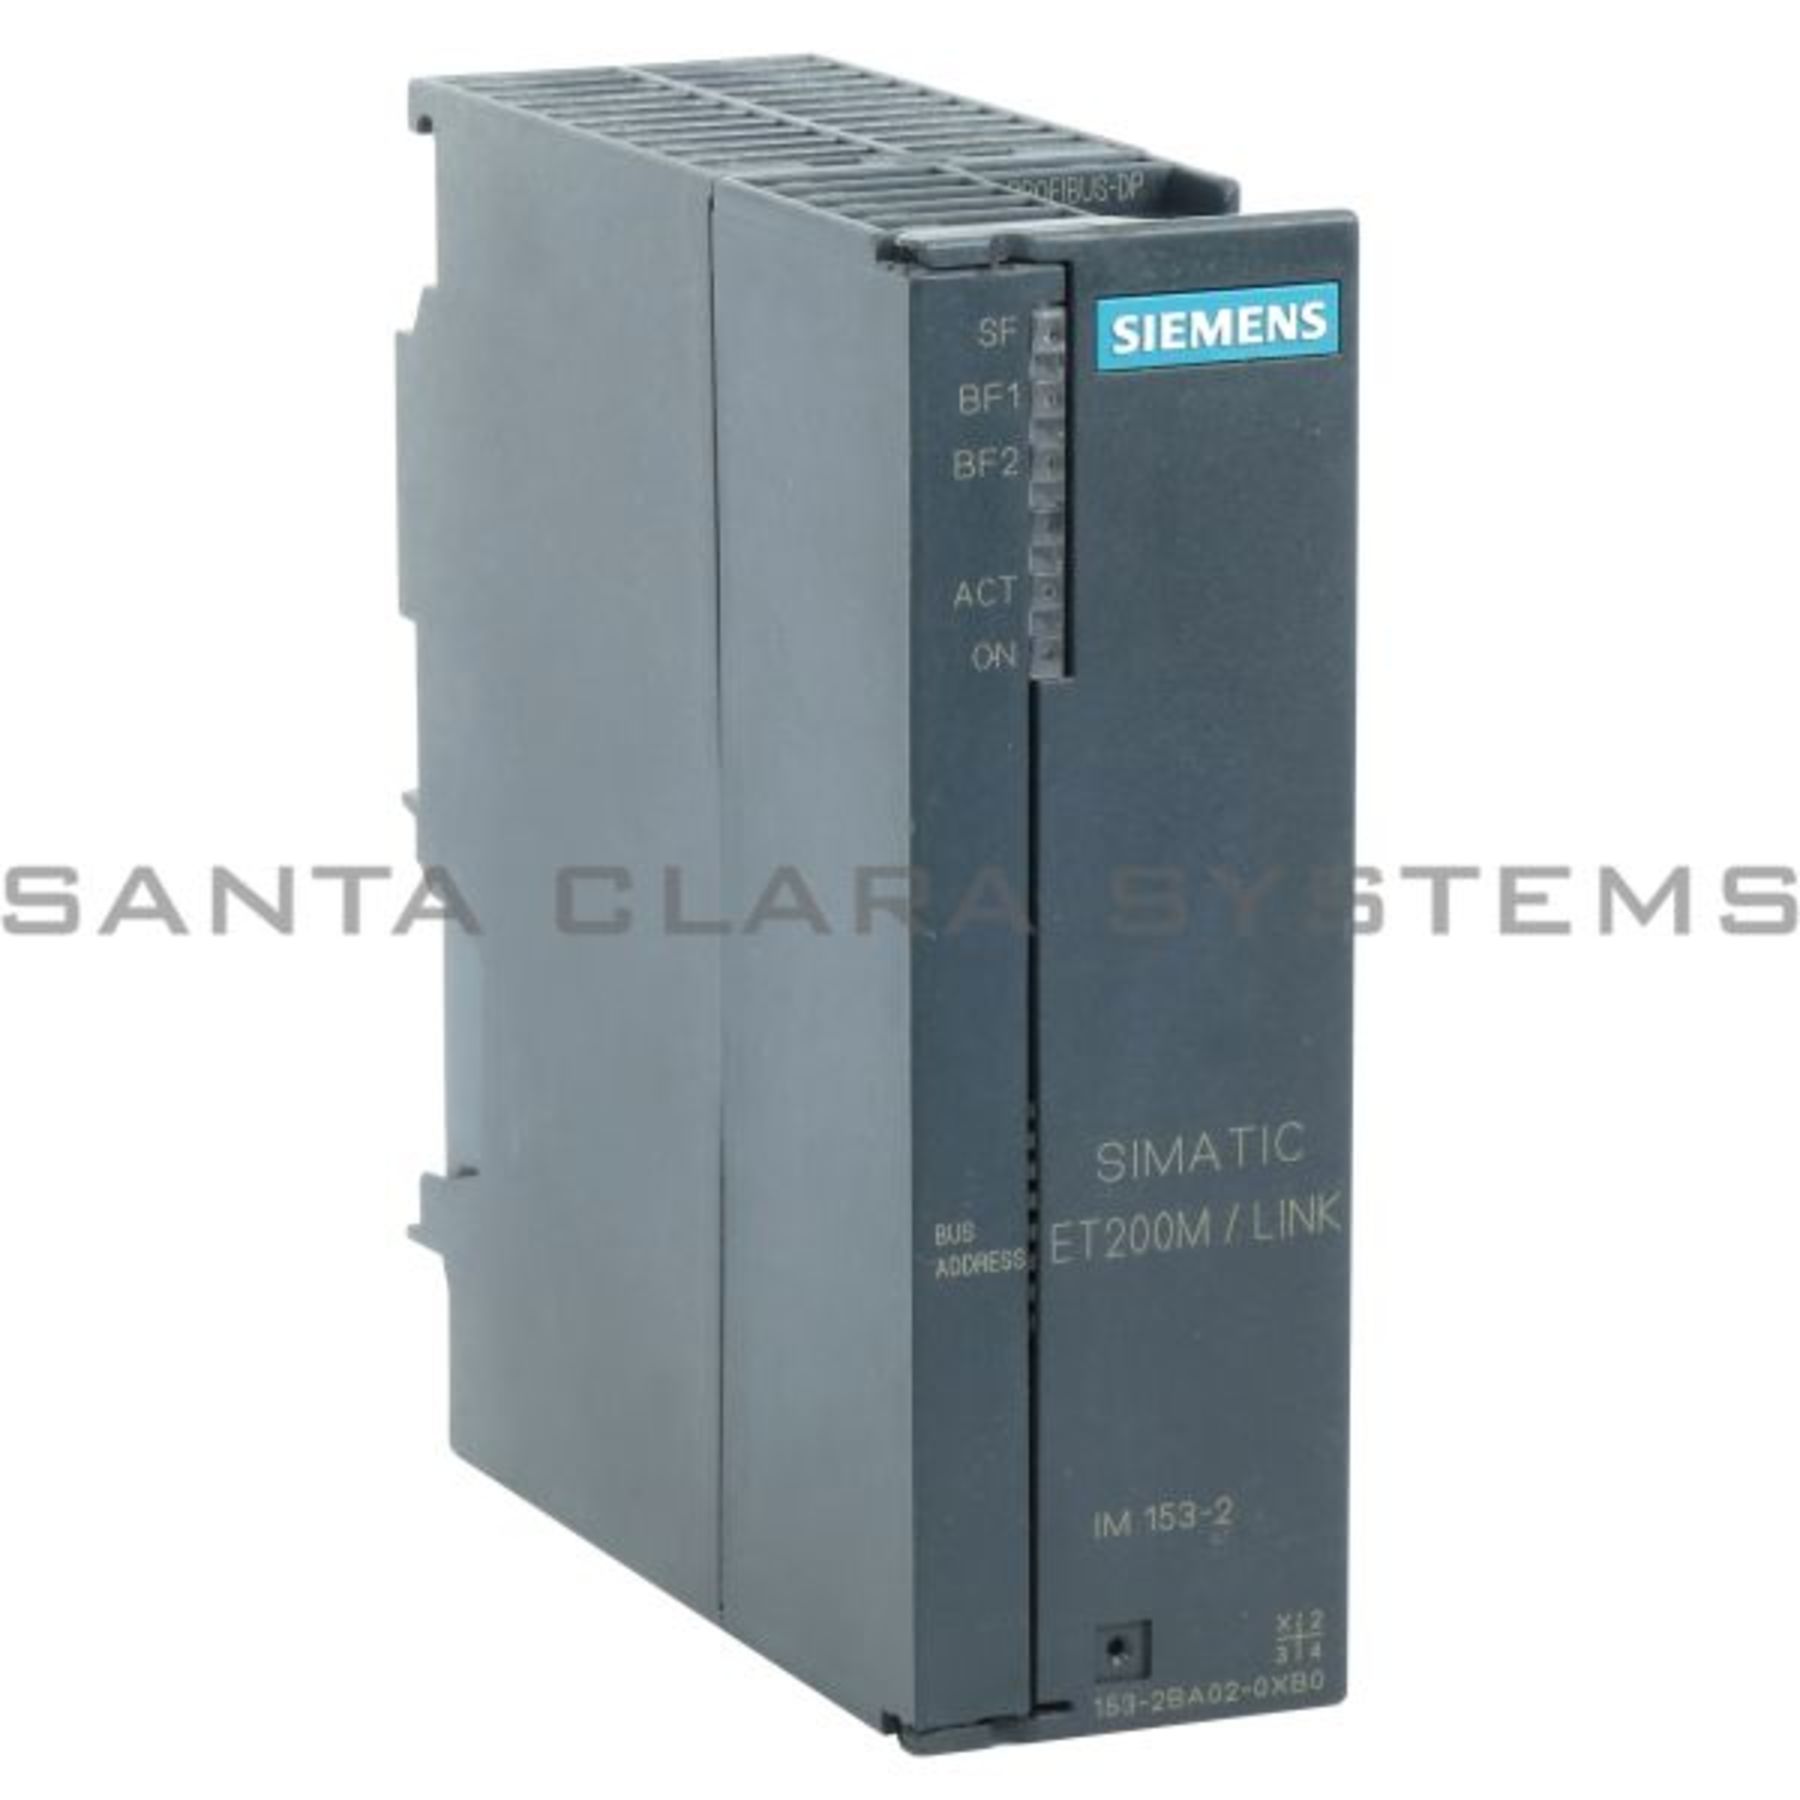 Siemens Simatic et200m/Link im153-2 6es7153-2ba02-0xb06es7 153-2ba02-0xb0 e:1